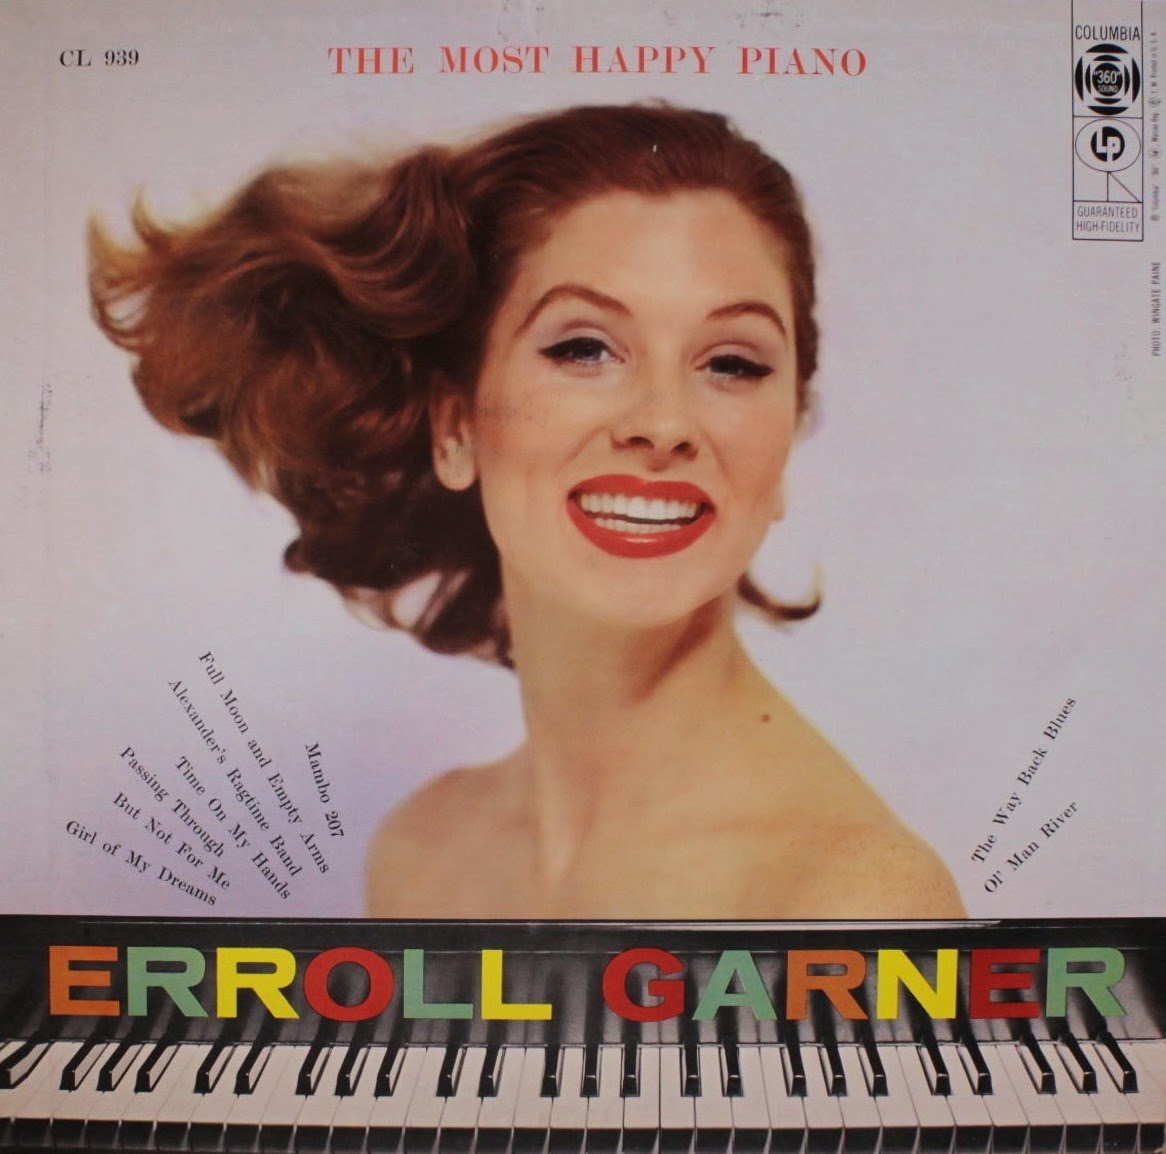 ERROLL GARNER - The Most Happy Piano cover 